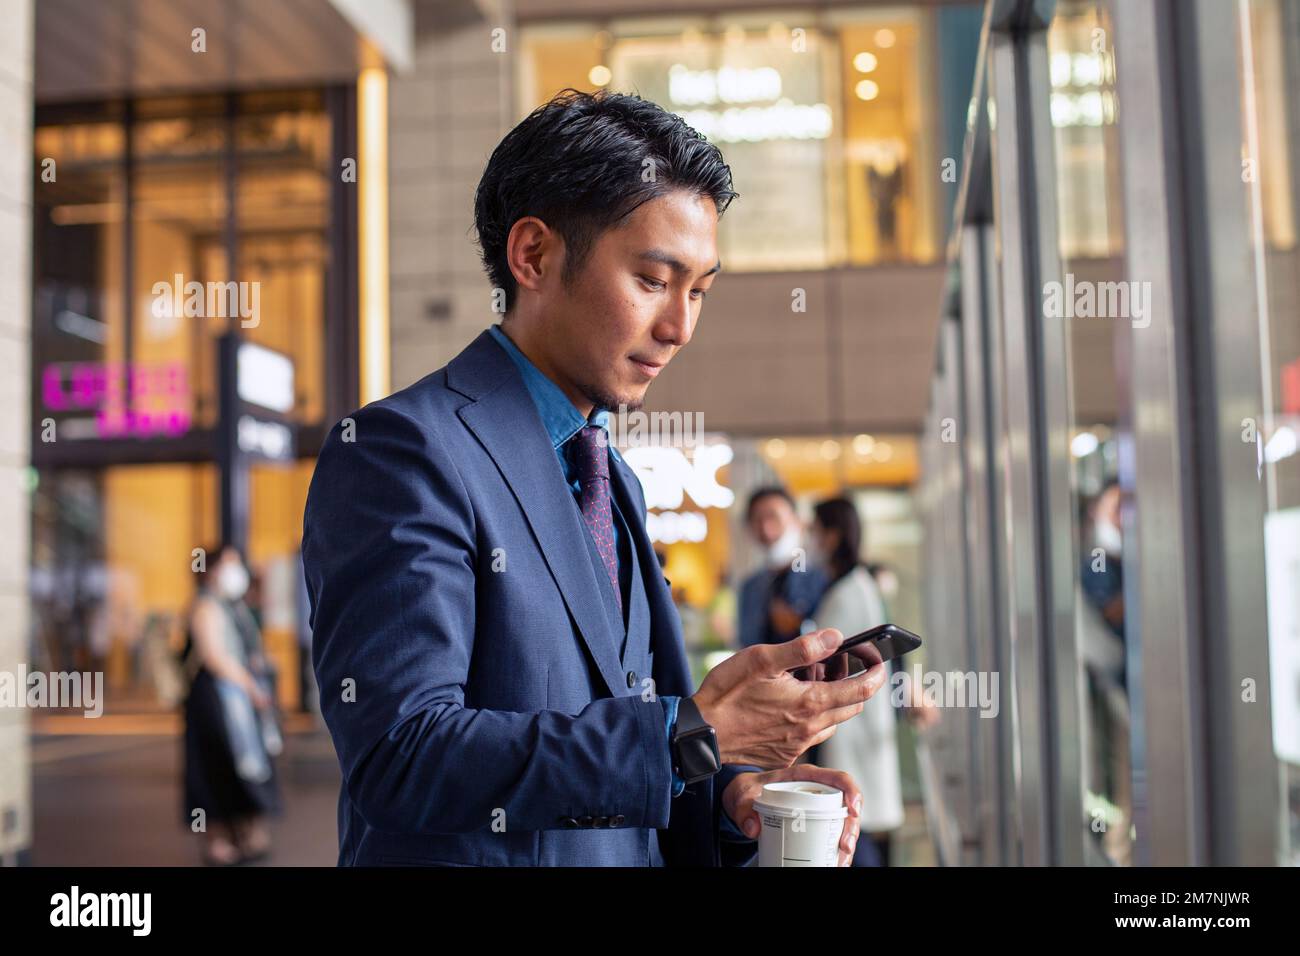 Ein junger Geschäftsmann in einem blauen Anzug in einer Stadt, der auf sein Handy schaut, eine SMS schreibt oder eine Nachricht liest. Stockfoto